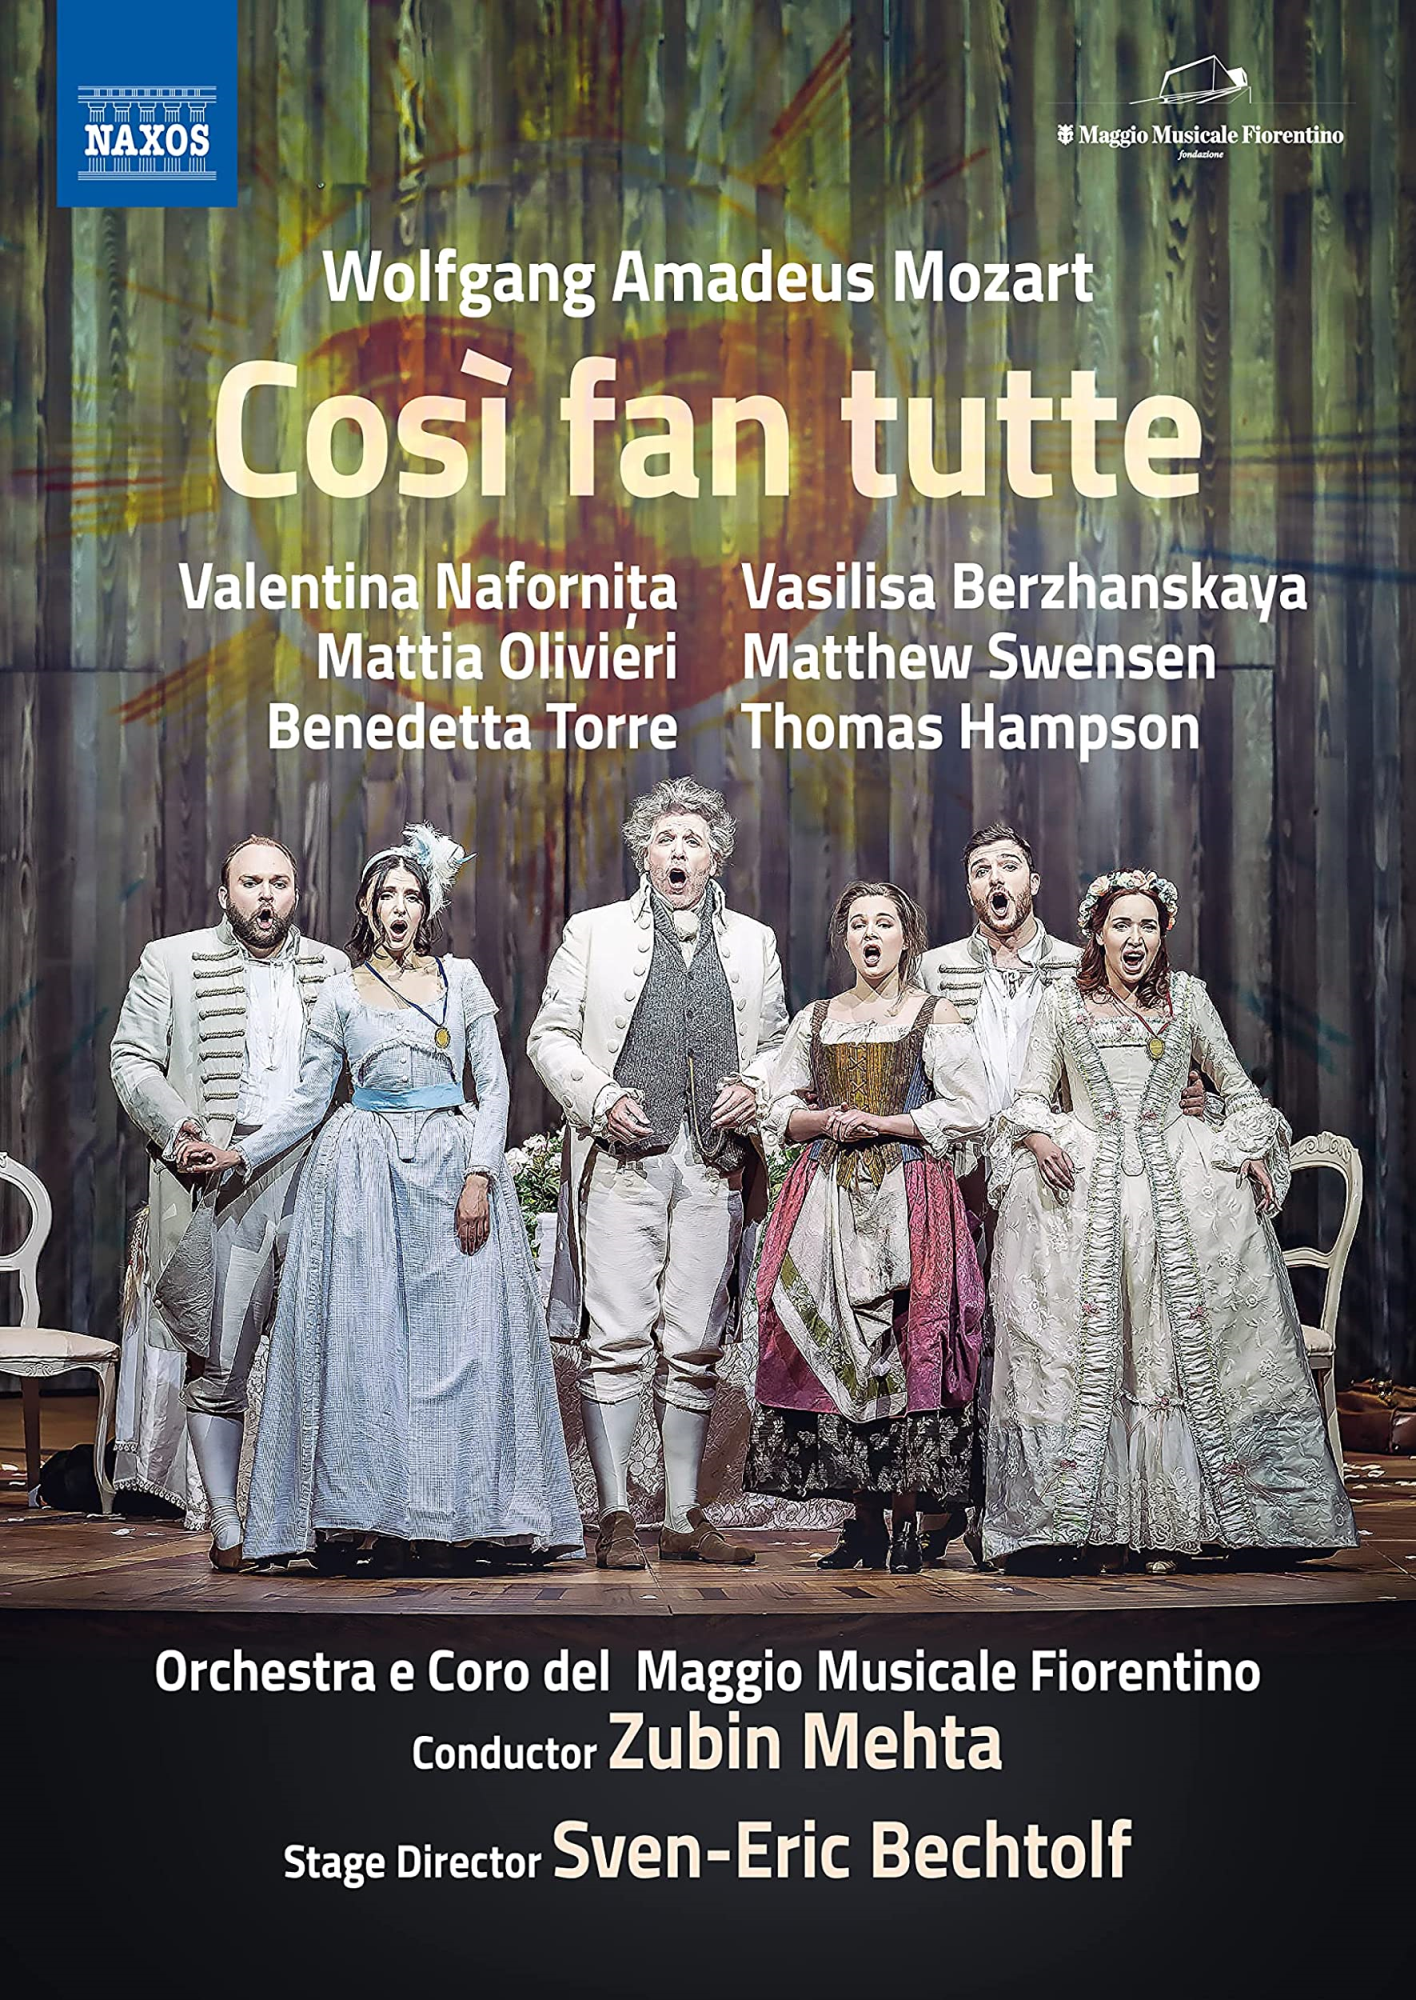 Music Dvd Wolfgang Amadeus Mozart - Cosi Fan Tutte NUOVO SIGILLATO, EDIZIONE DEL 05/03/2022 SUBITO DISPONIBILE